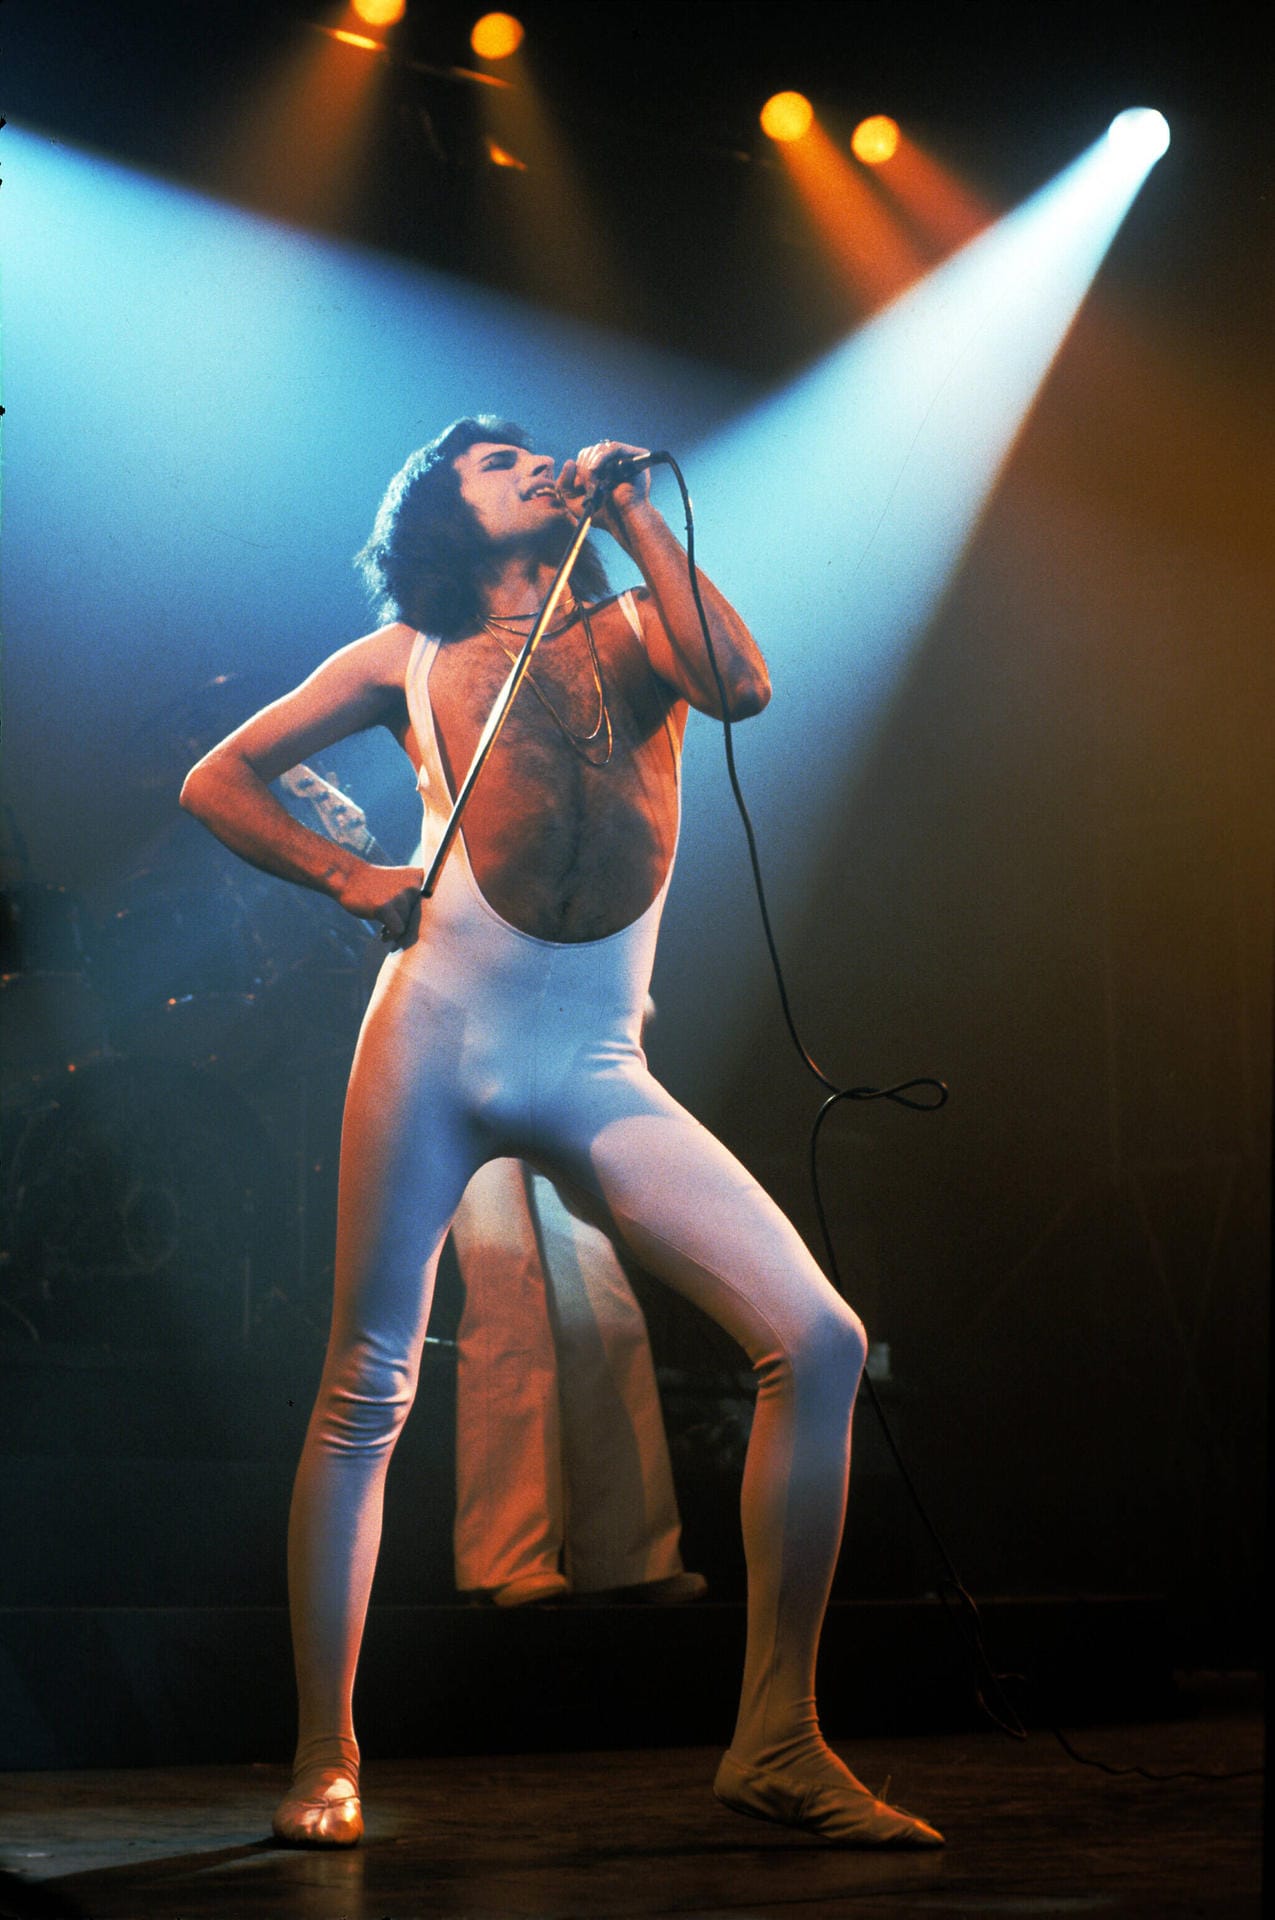 "Wenn ich nicht mehr singen kann, Darling, dann werde ich sterben, dann falle ich tot um", soll Freddie Mercury kurz vor seinem Tod gesagt haben.